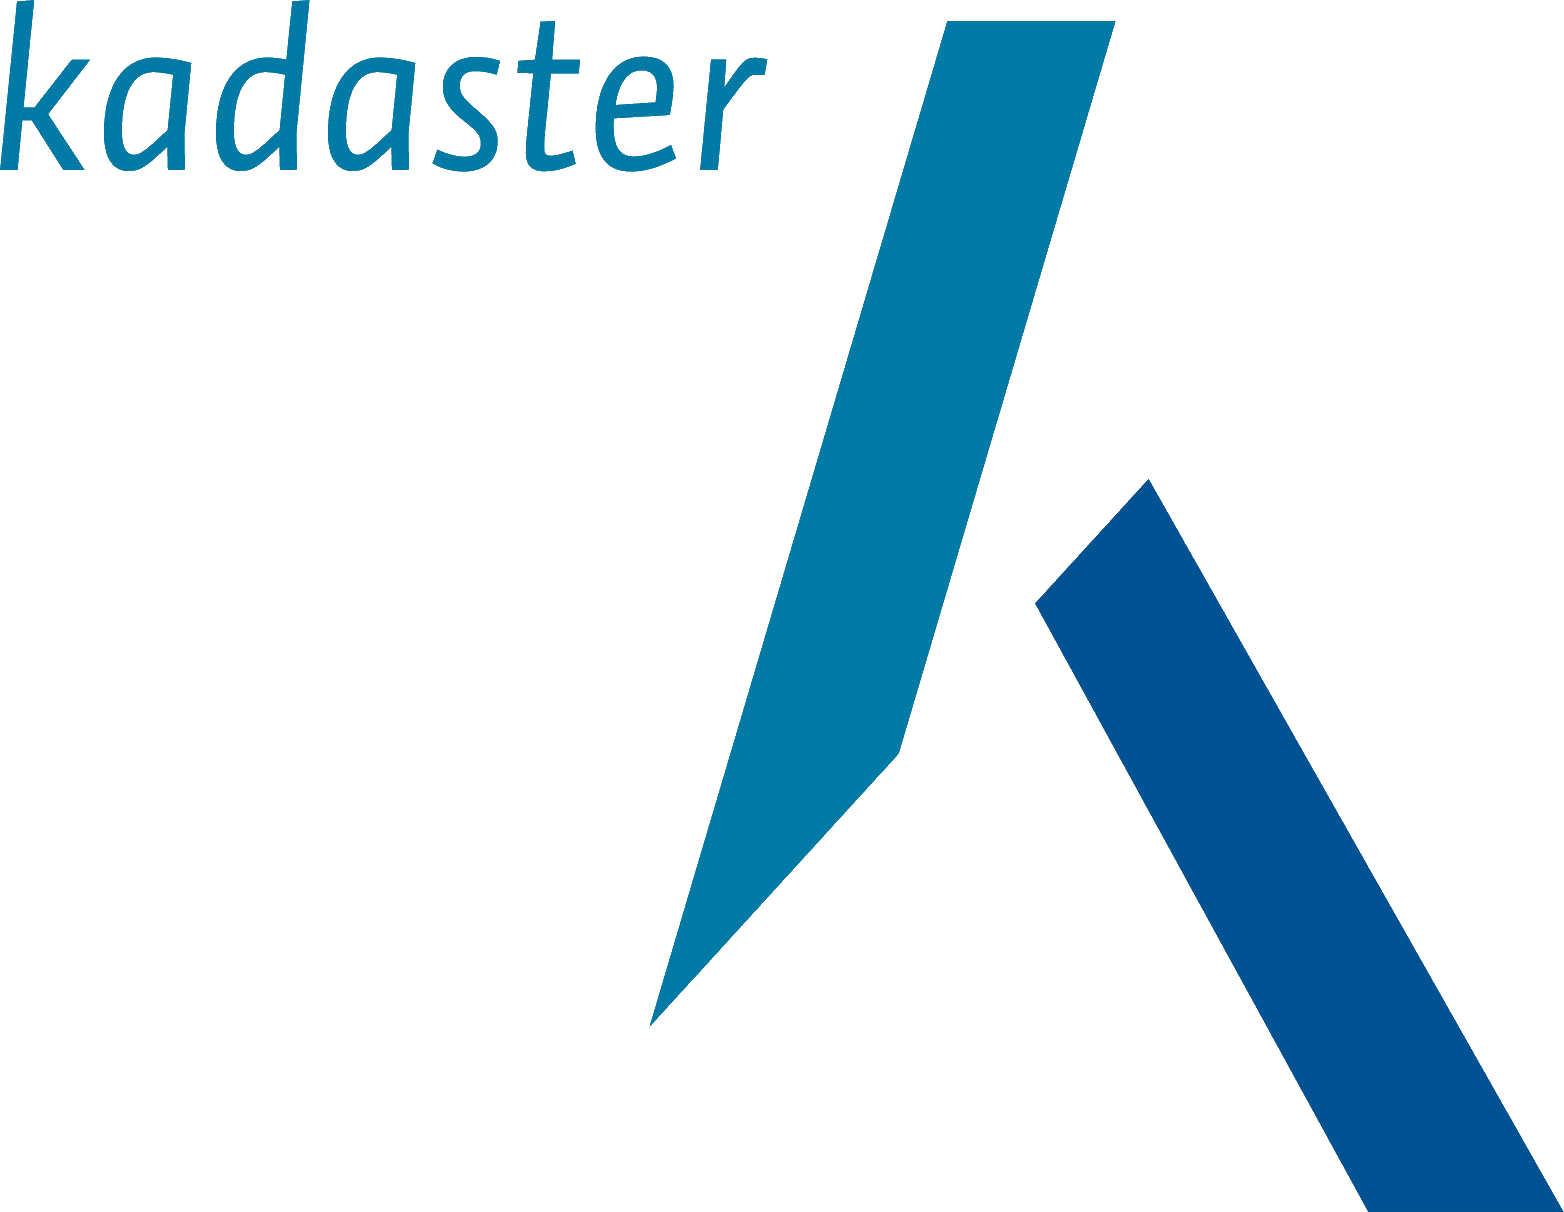 Logo van het Kadaster